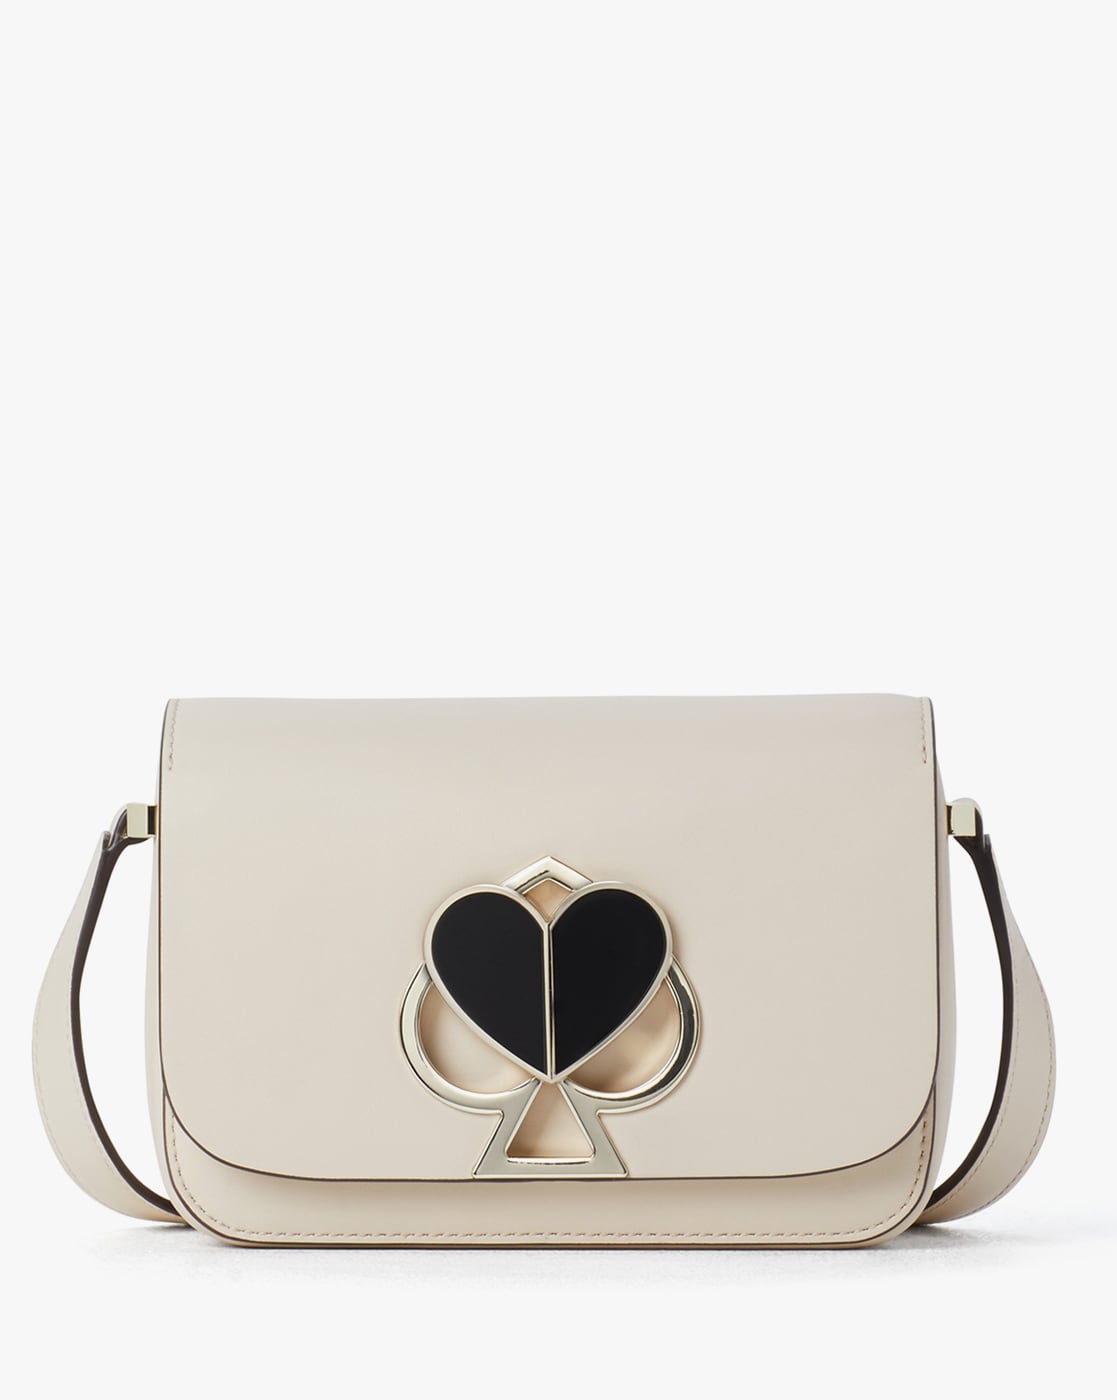 Shop Kate Spade Bag Authentic online